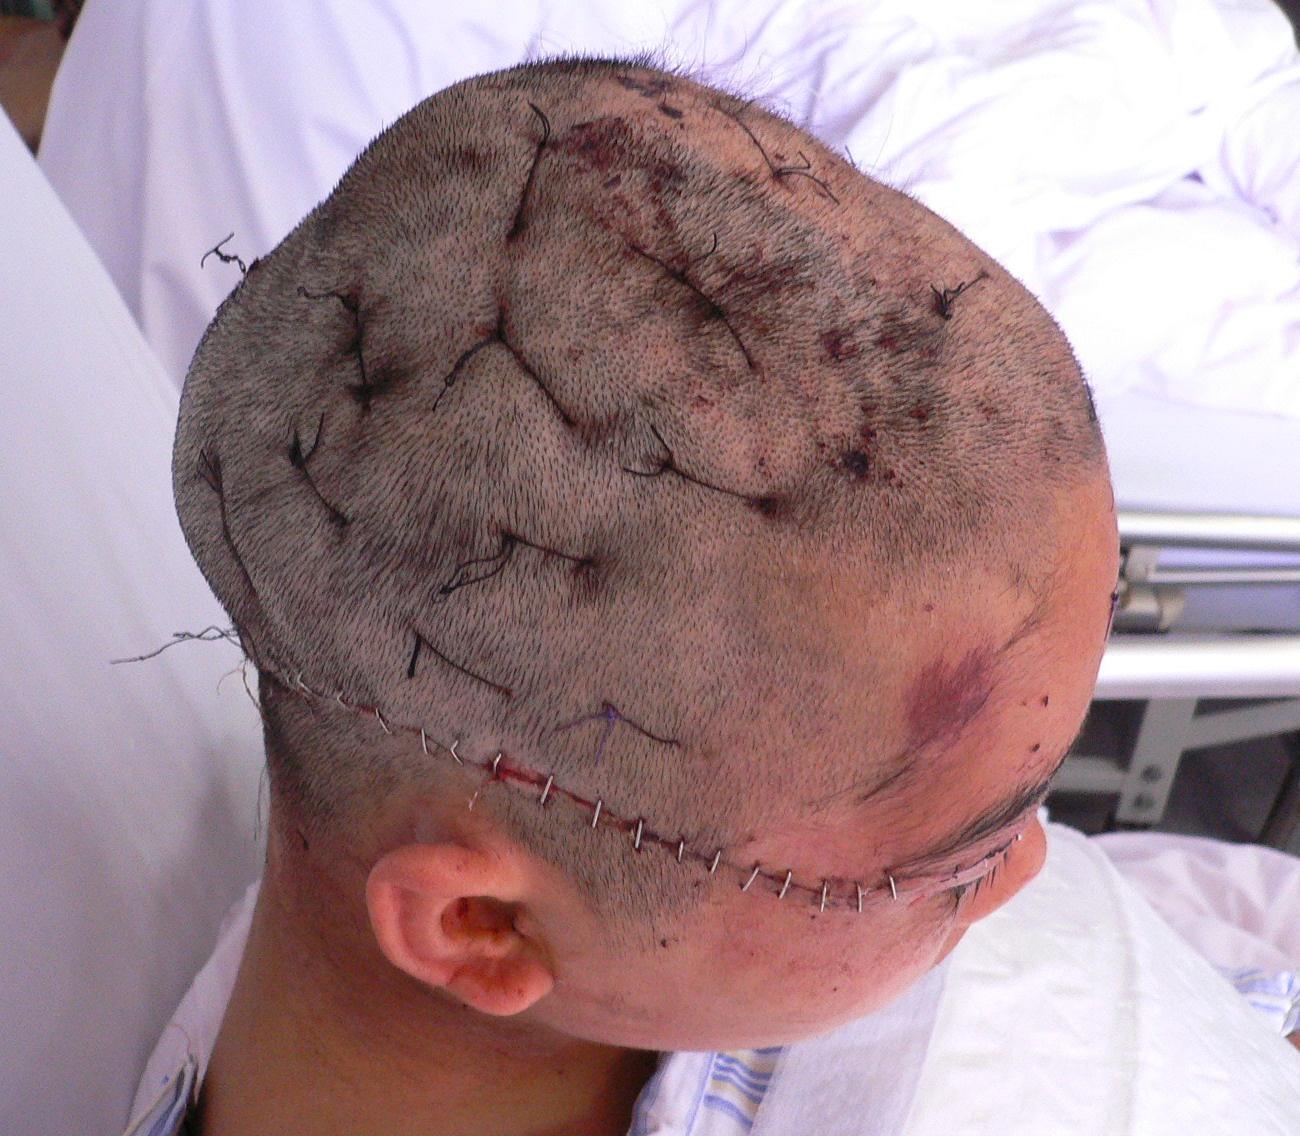 时不慎头发被机器绞卷致头皮大面积剥脱伤,入院后急诊清创原位回植,术